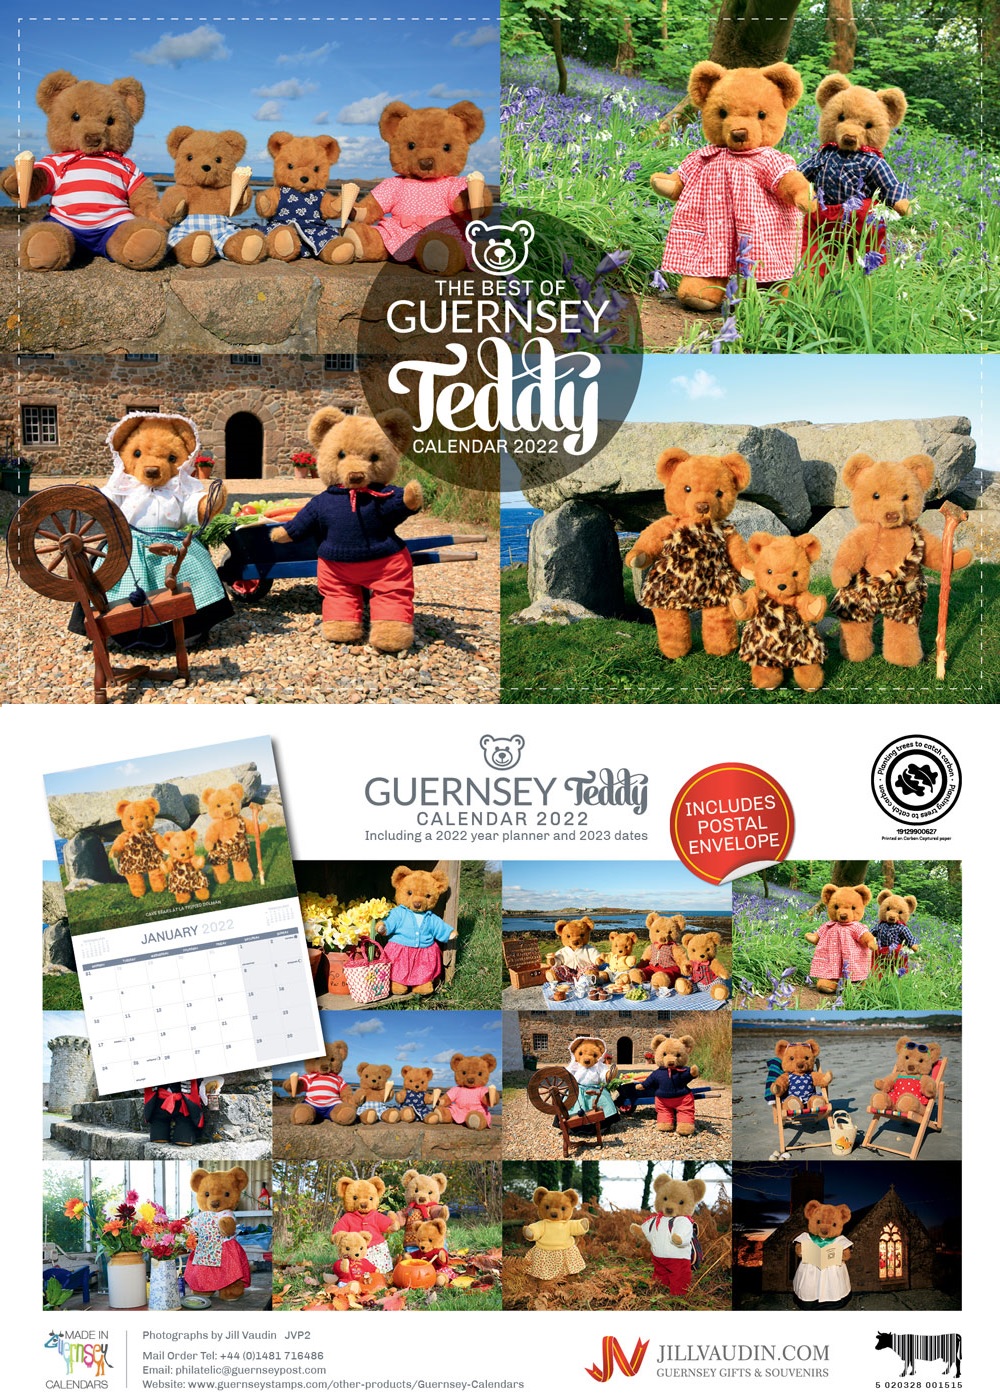 The Best of Guernsey Teddy Calendar  2022